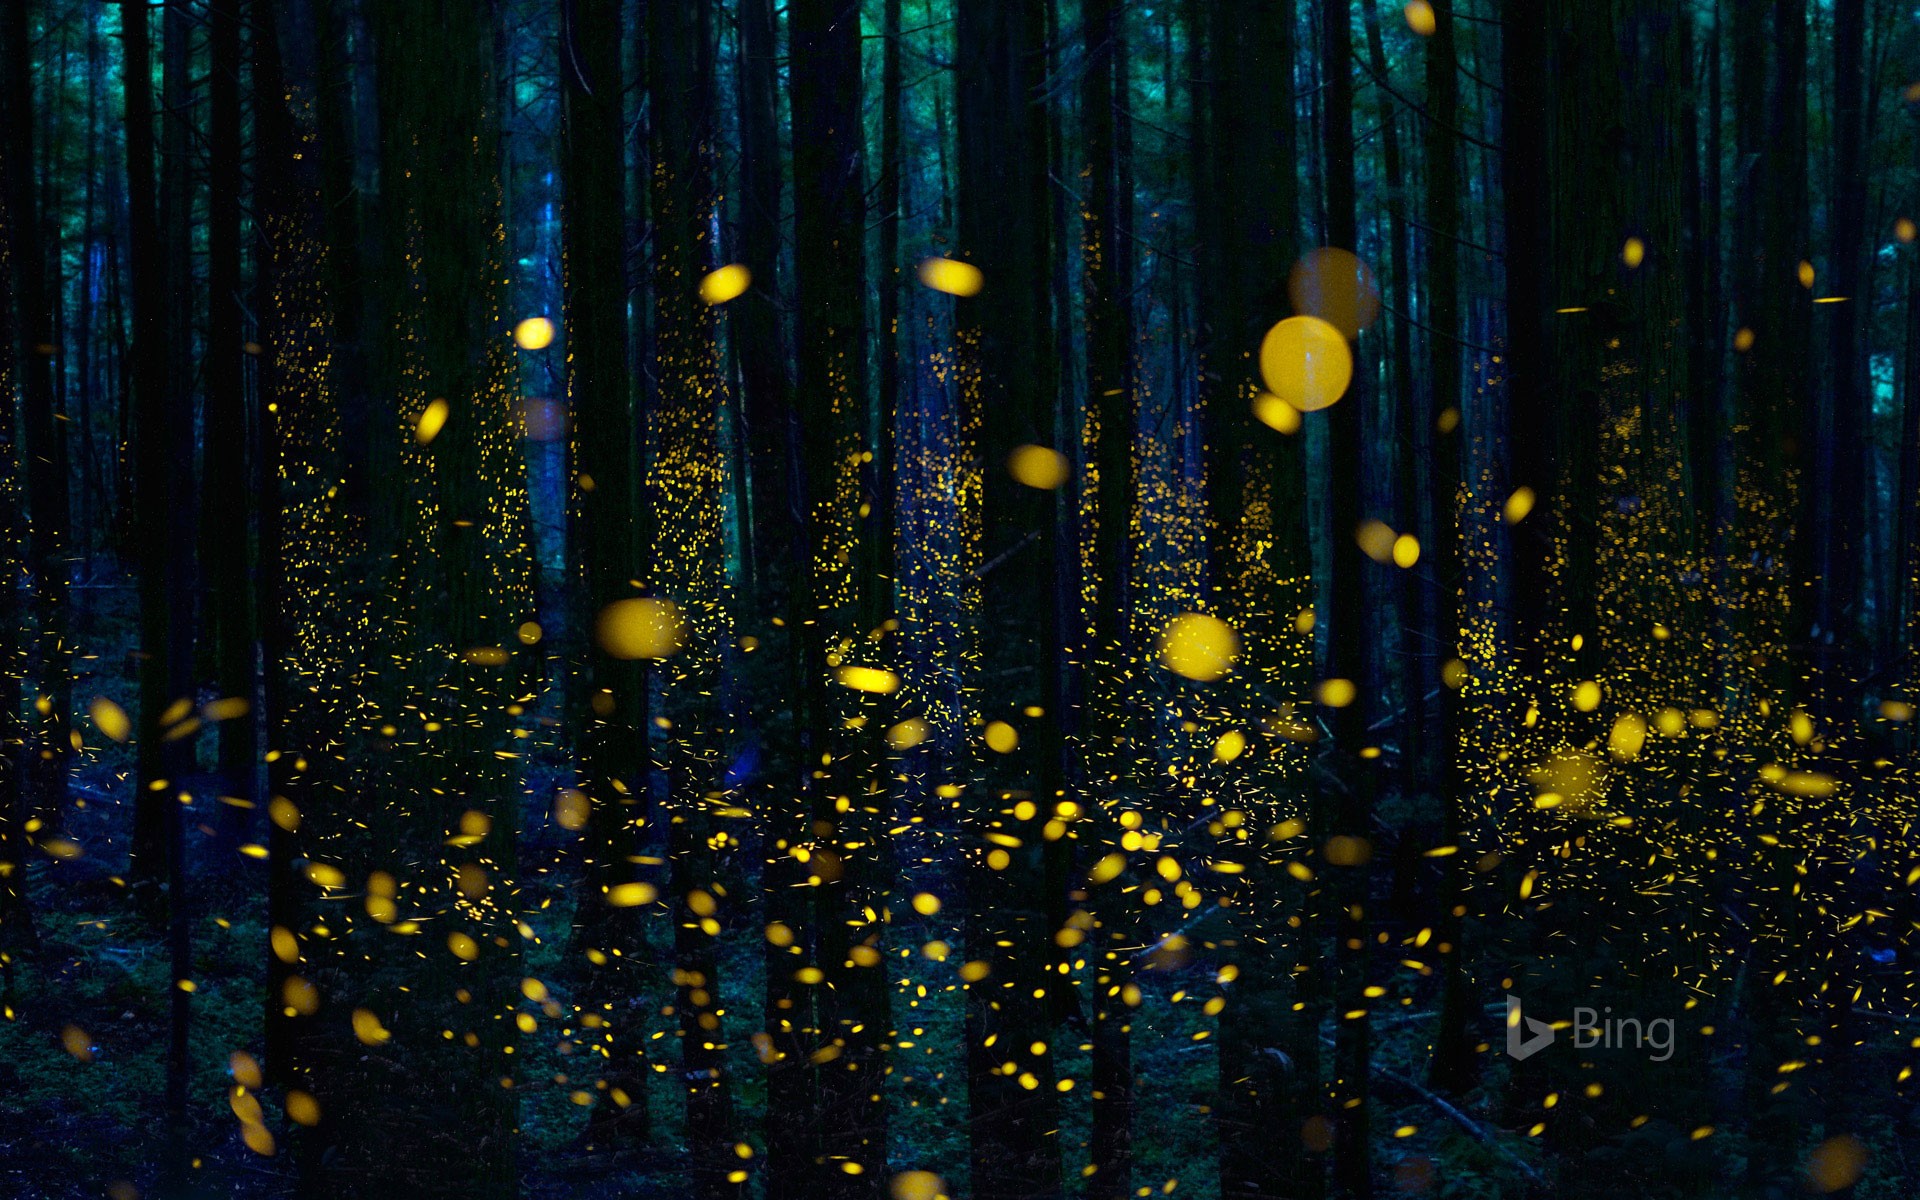 lit_fireflies